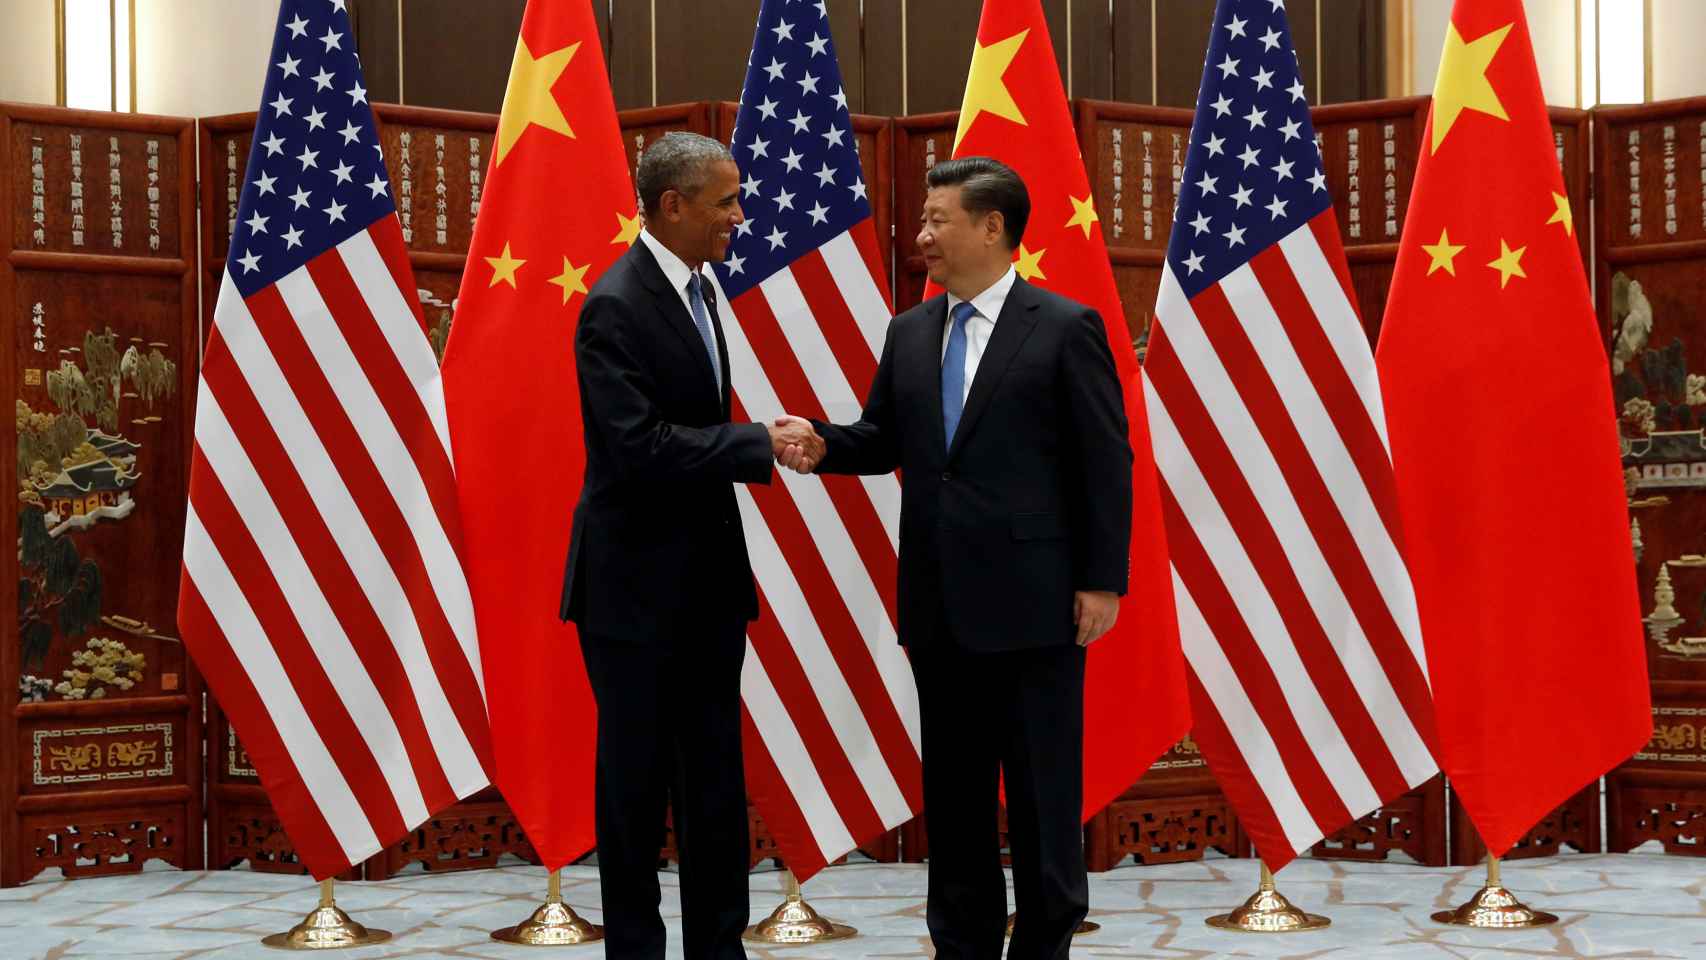 El presidente de EEUU, Barack Obama, y su homólogo chino, Xi Jinping, se estrechan la mano tras anunciar su ratificación del pacto de París.